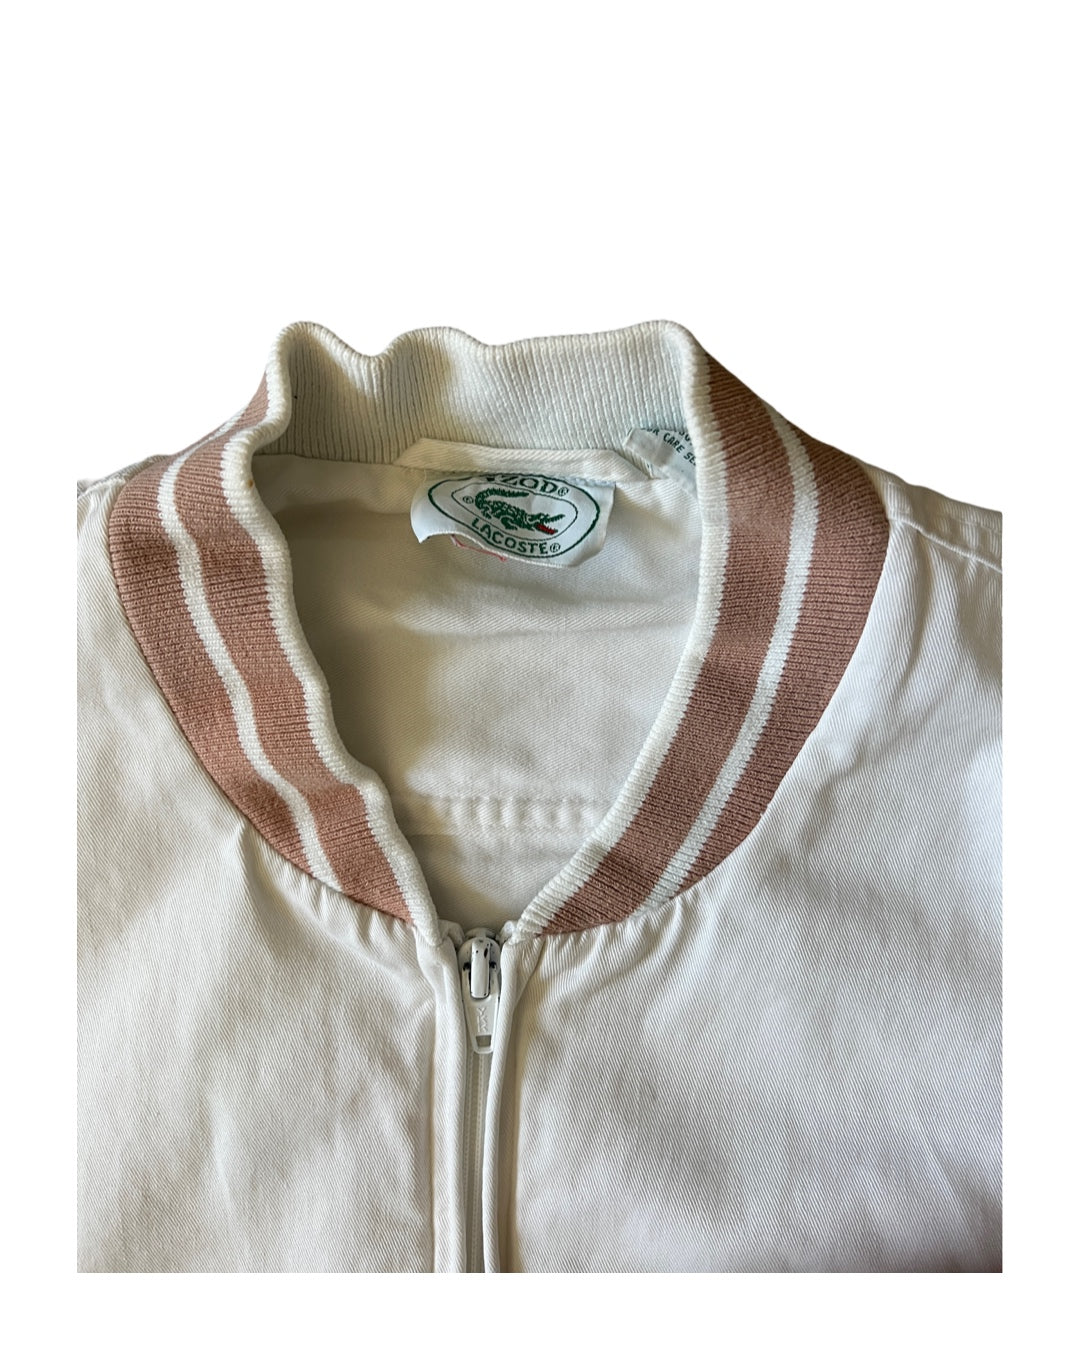 Vintage Lacoste Tennis Jacket (circa 1980s)